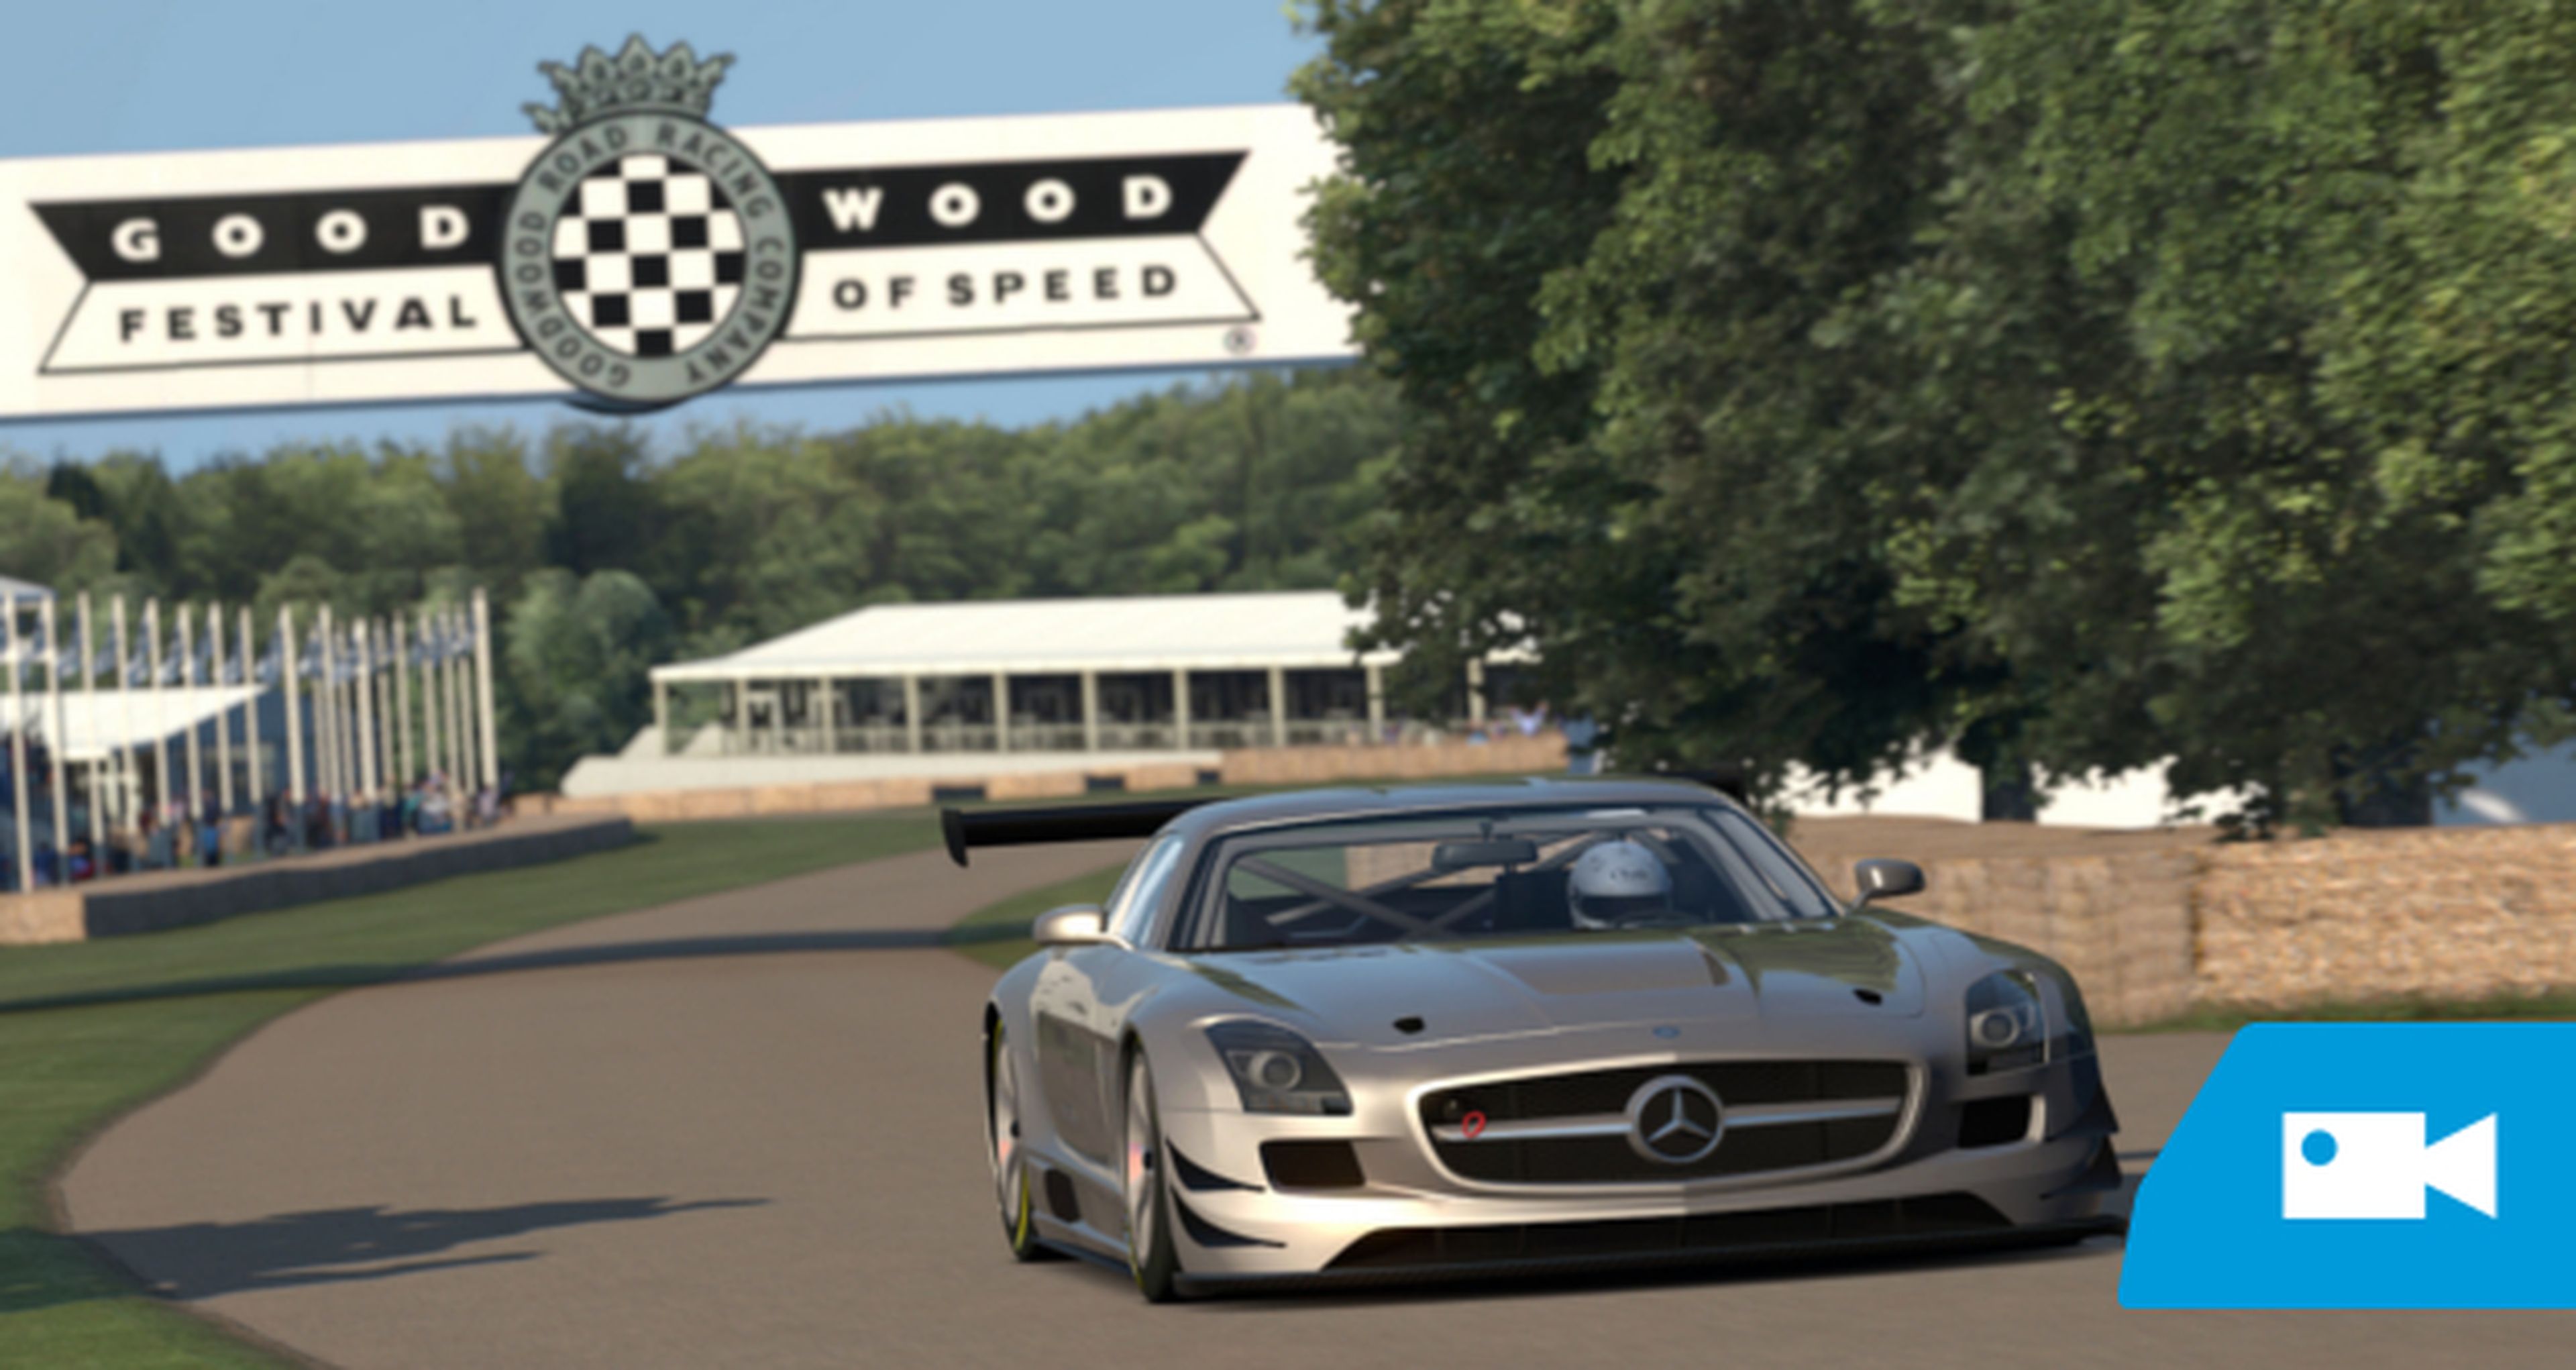 El circuito Goodwood de Gran Turismo 6 en video